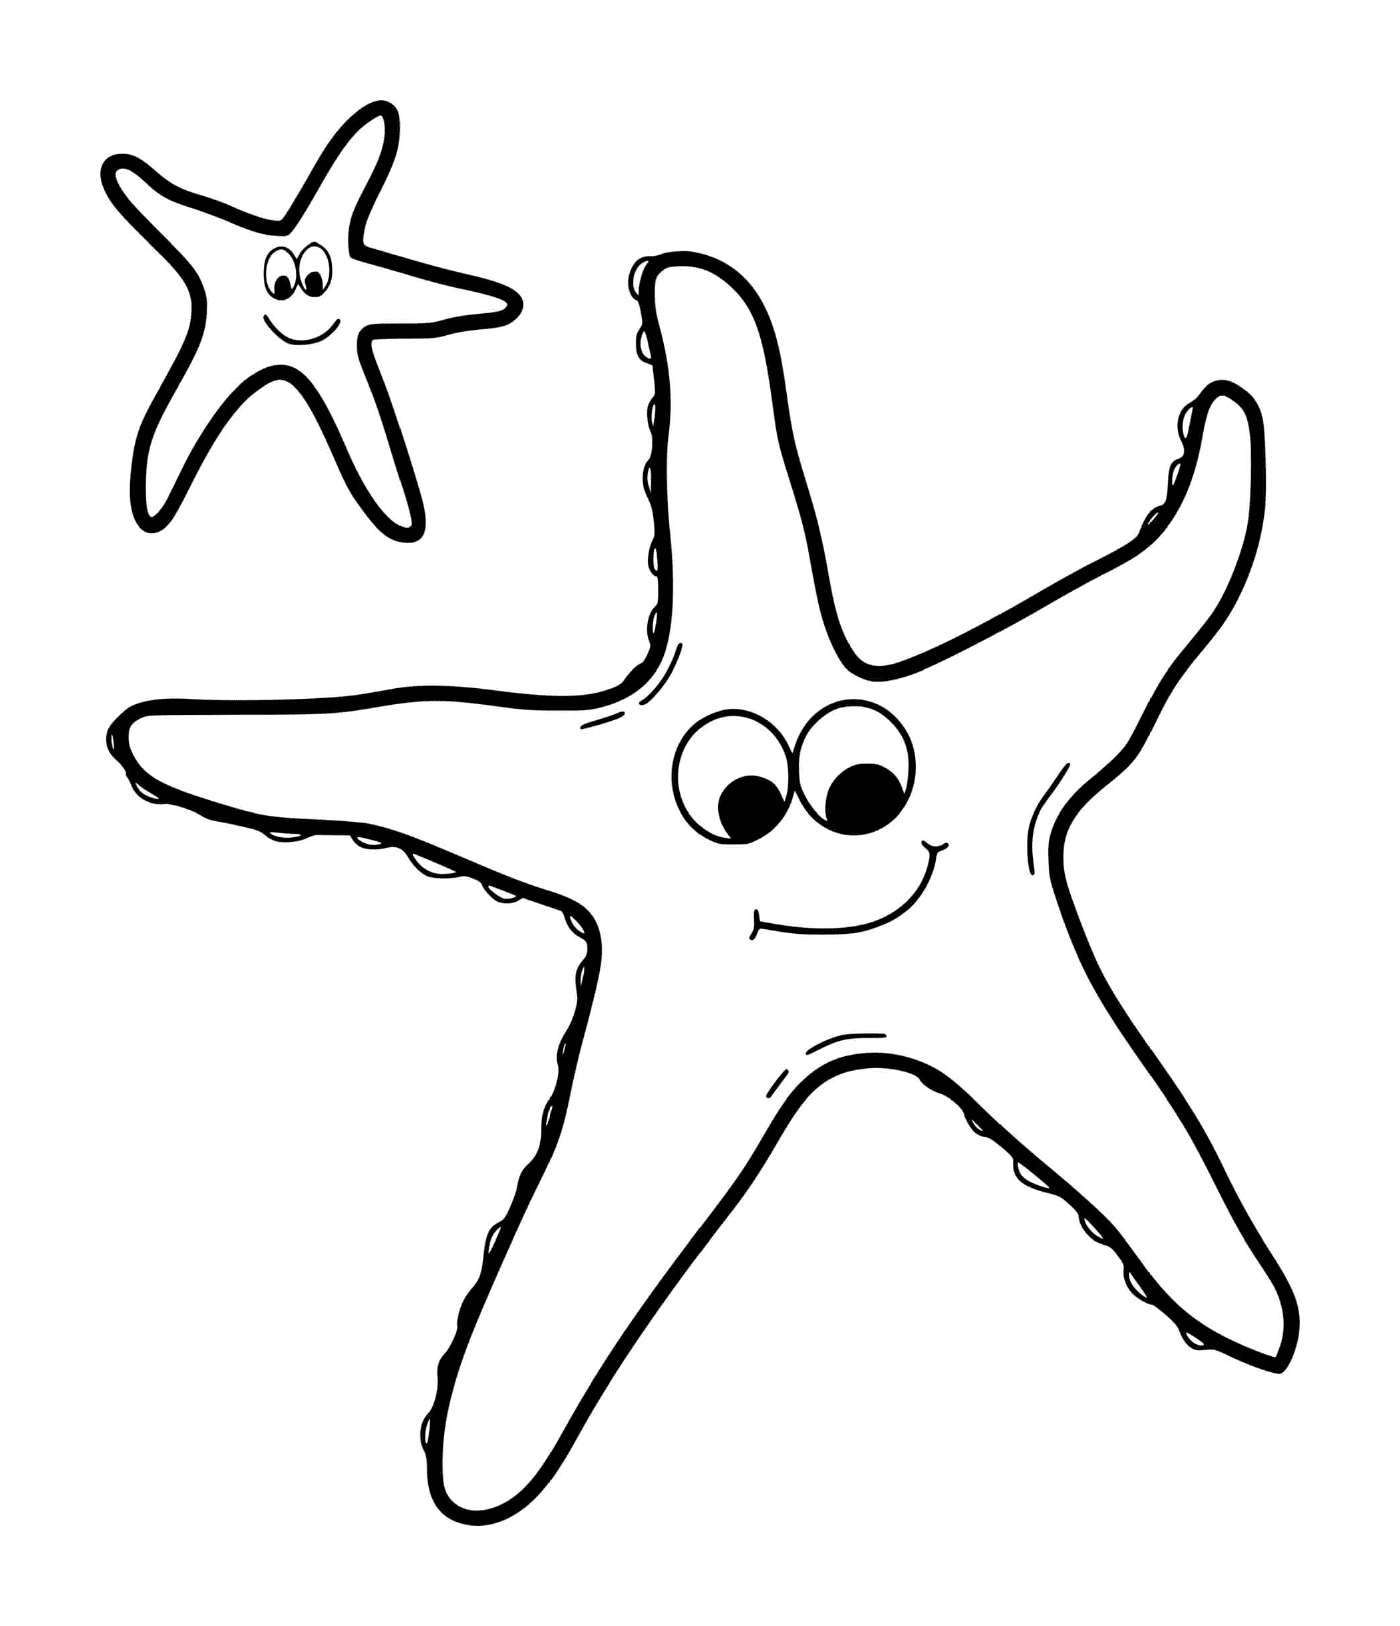  Dos estrellas de mar sonrientes 